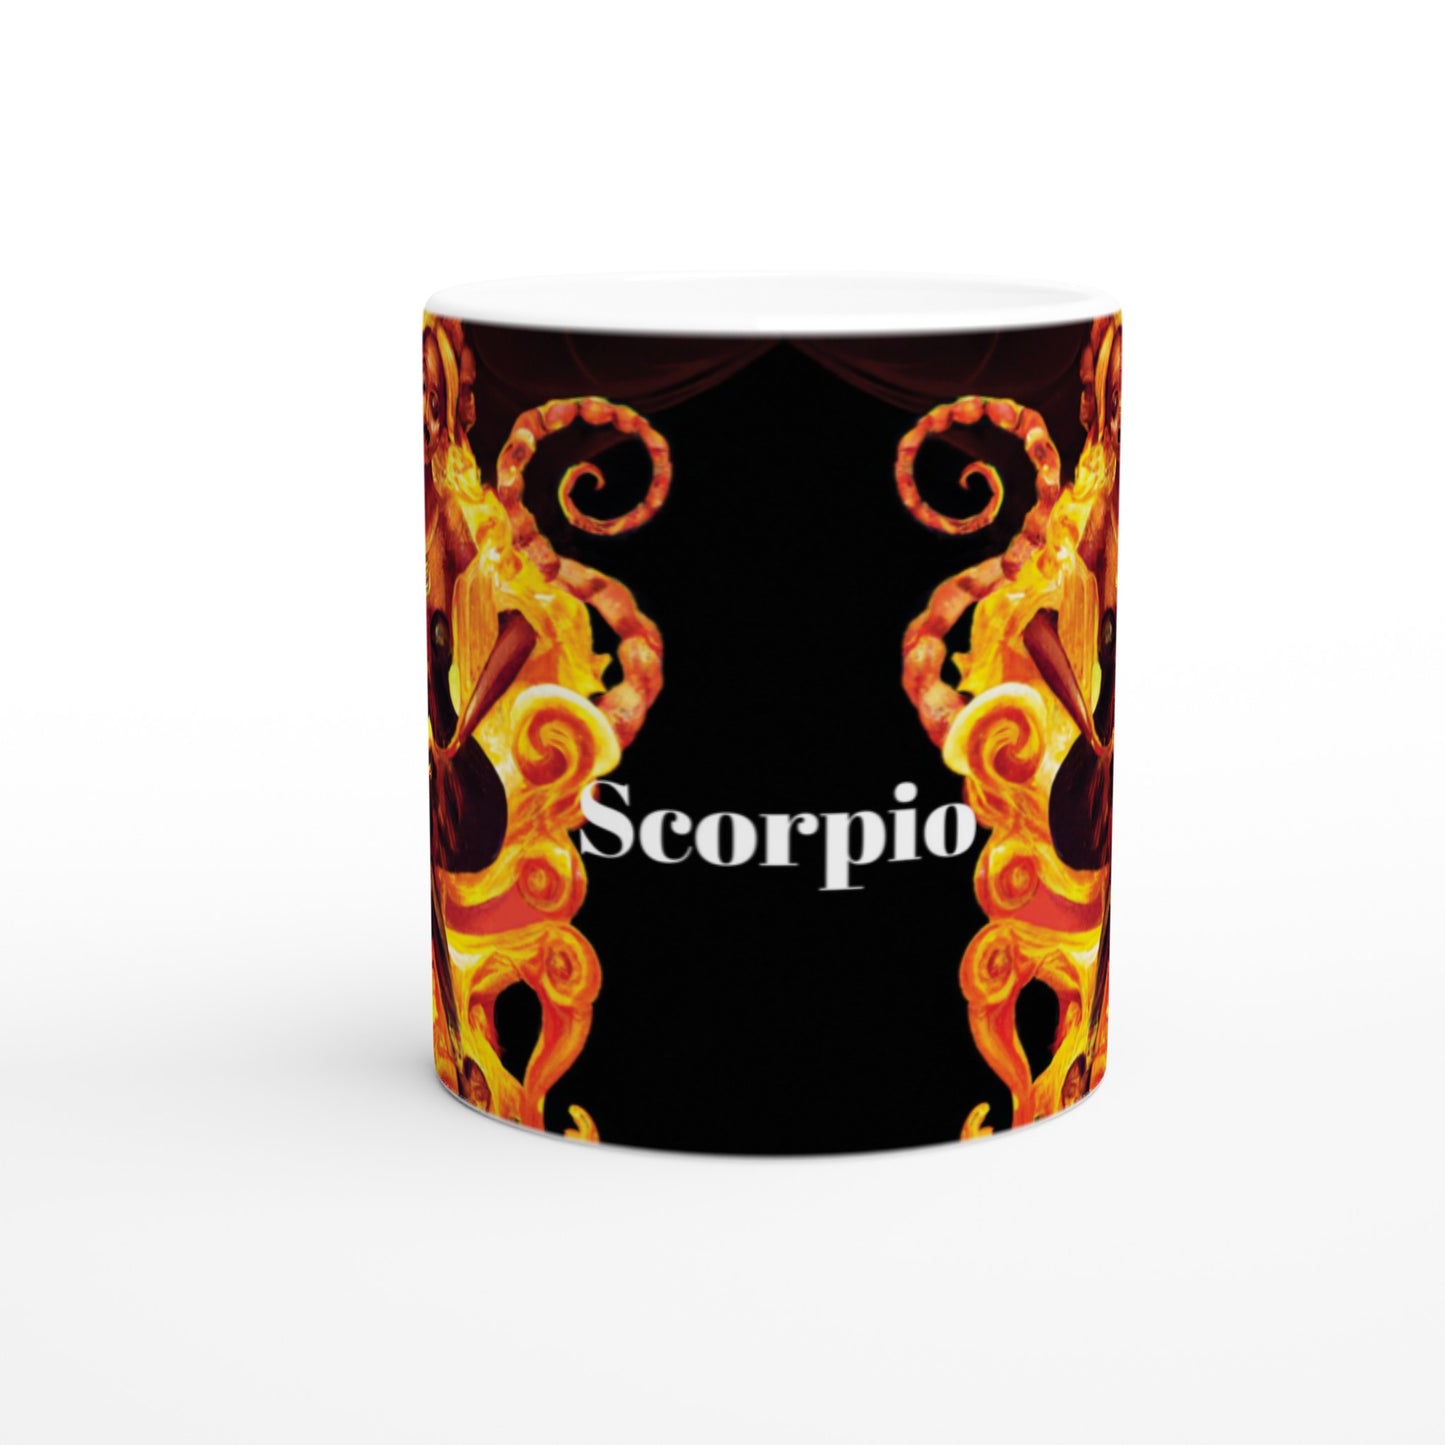 Fire Fly Scorpio Ceramic Mug -11oz